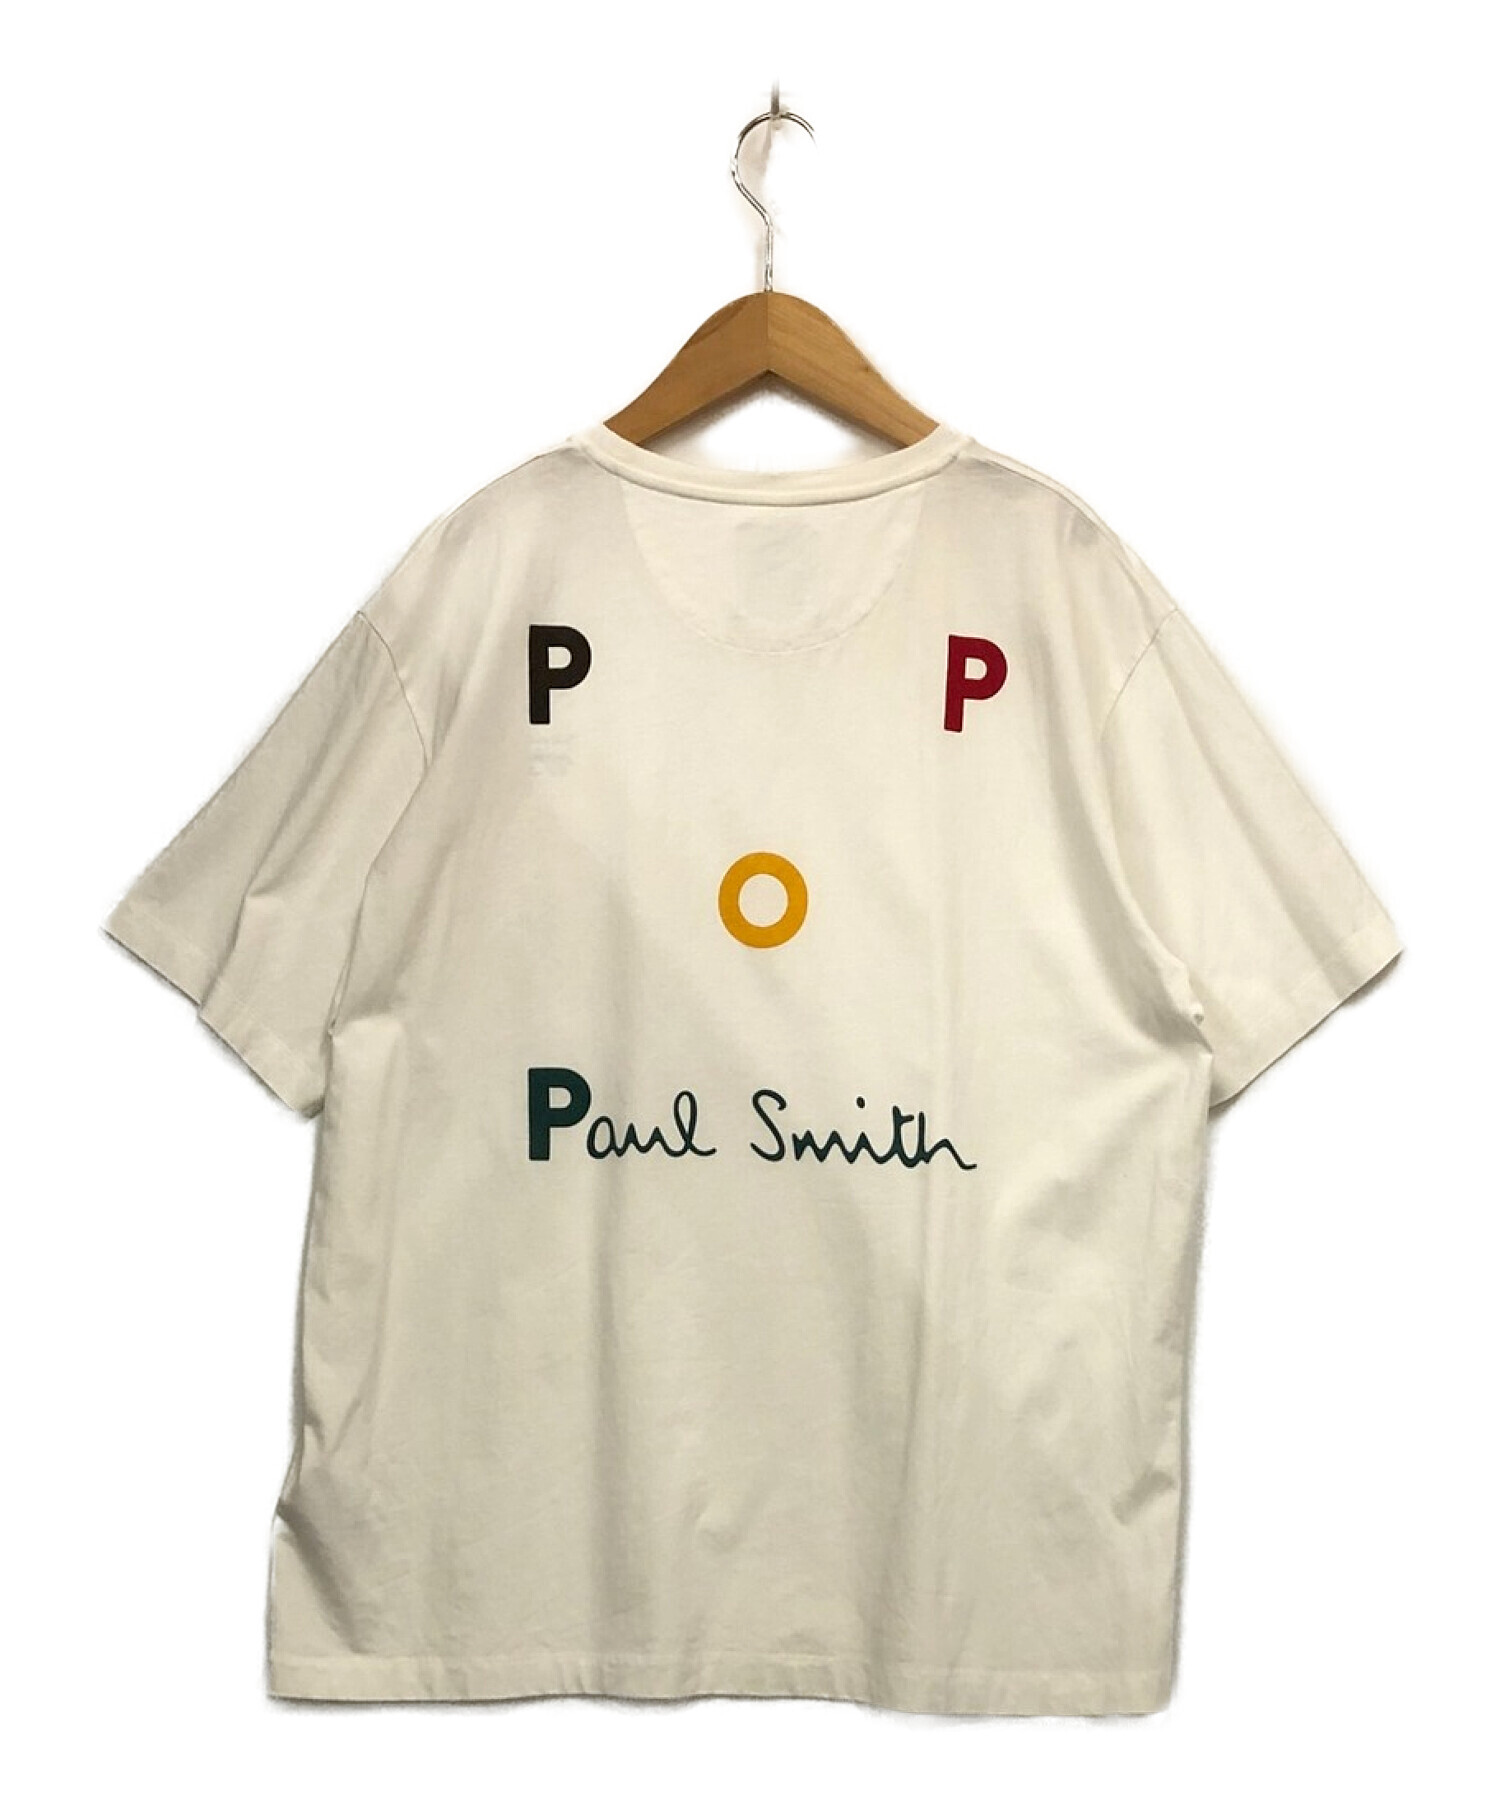 Paul Smith + Pop Trading Company Tシャツ